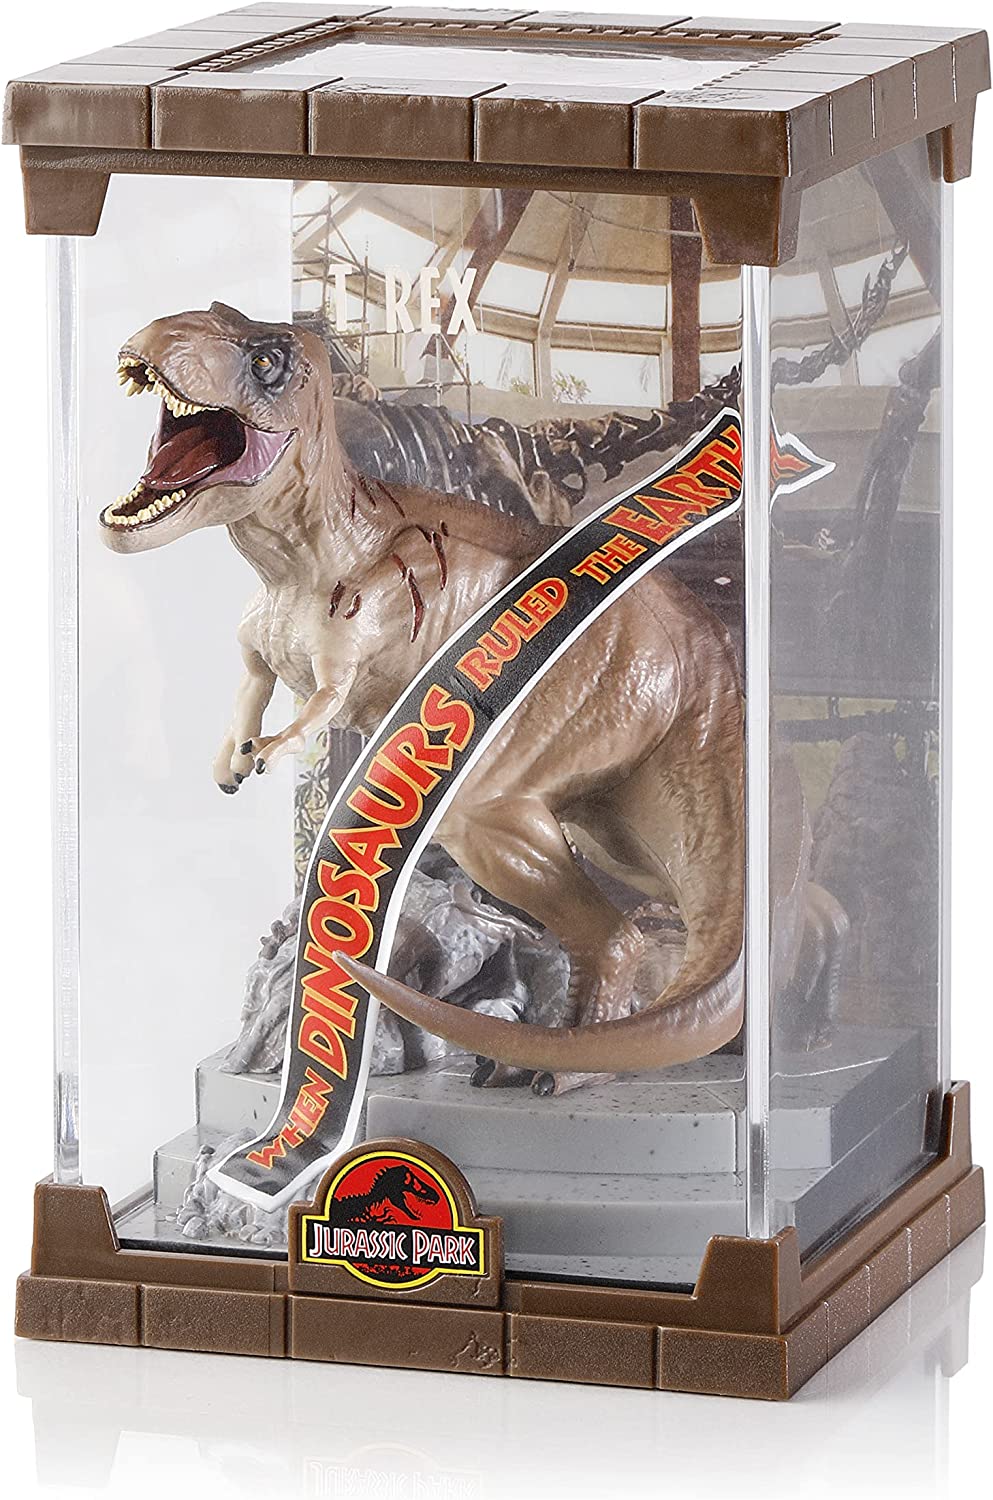 Das Tyrannosaurus Rex-Diorama der Noble Collection